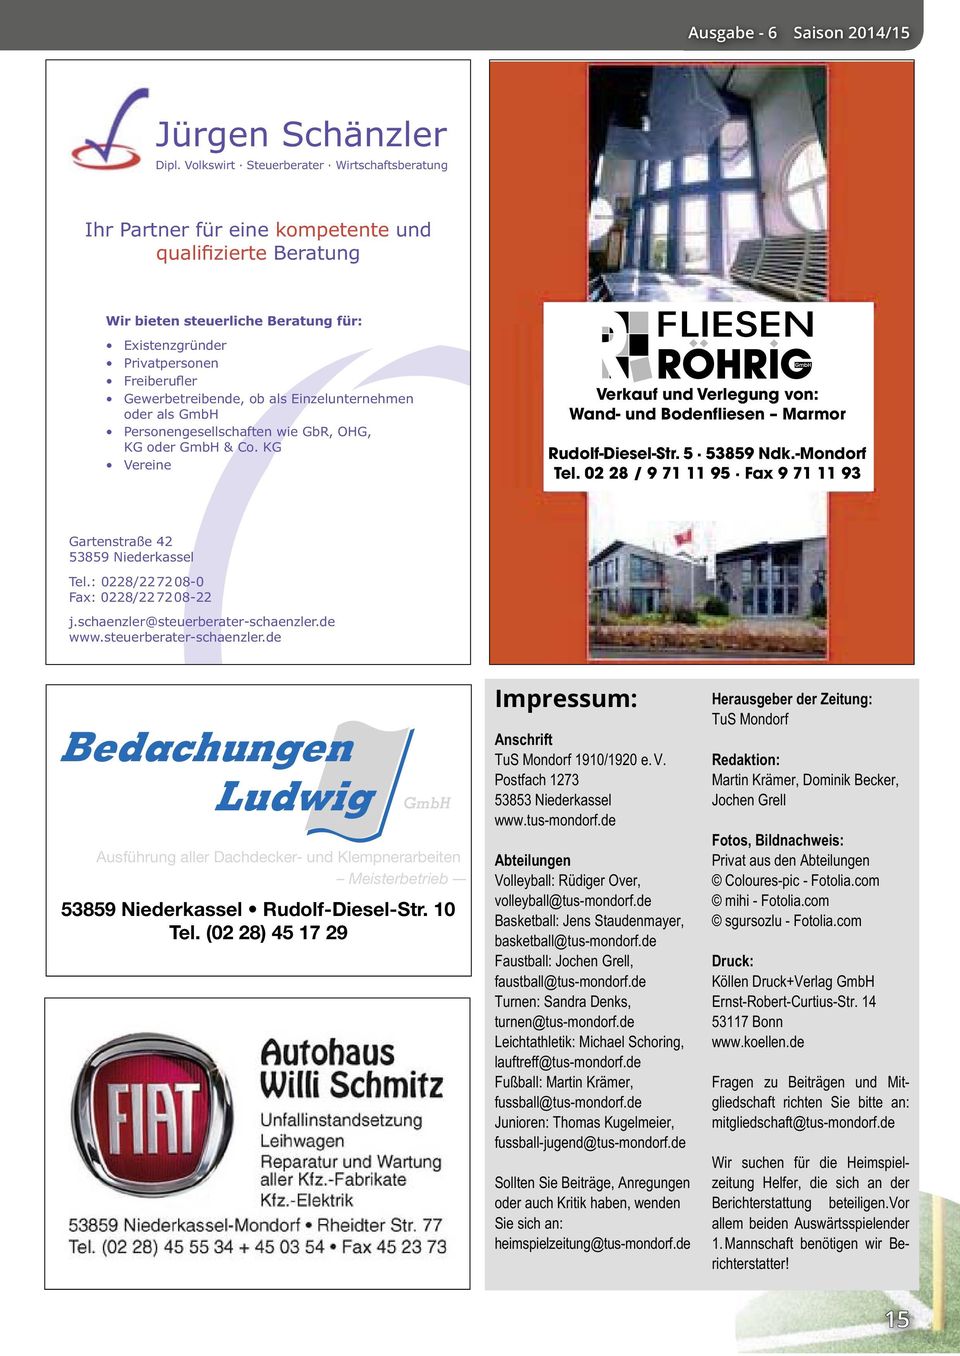 oder als GmbH Personengesellschaften wie GbR, OHG, KG oder GmbH & Co. KG Vereine Verkauf und Verlegung von: Wand- und Bodenfliesen Marmor Rudolf-Diesel-Str. 5 53859 Ndk.-Mondorf Tel.